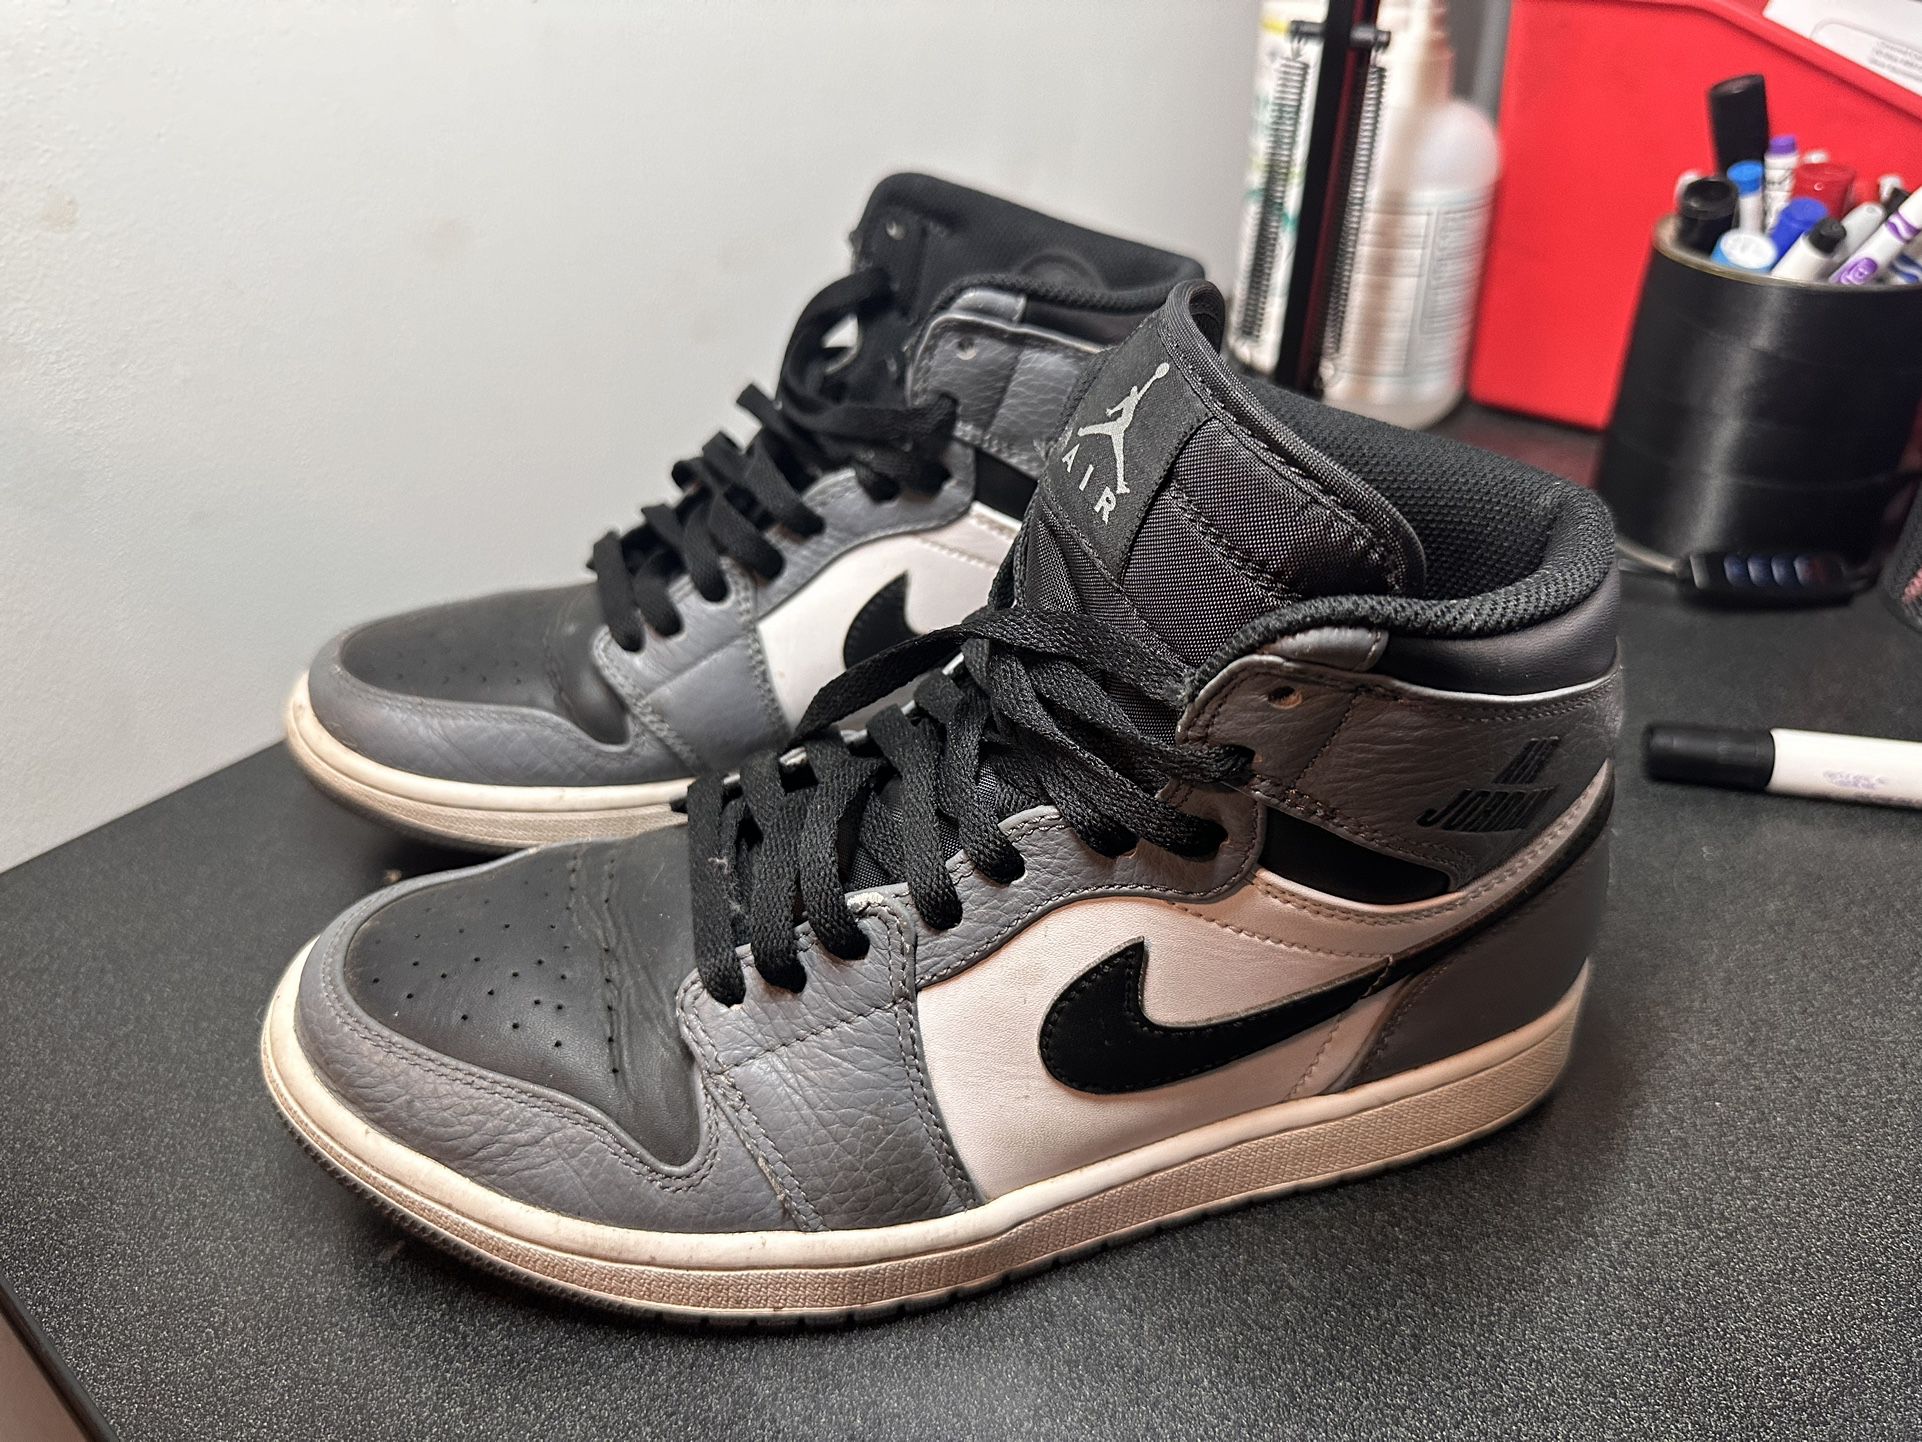 Nike Air Jordan 1 Rare Air 'cool Grey' Men's Size 9